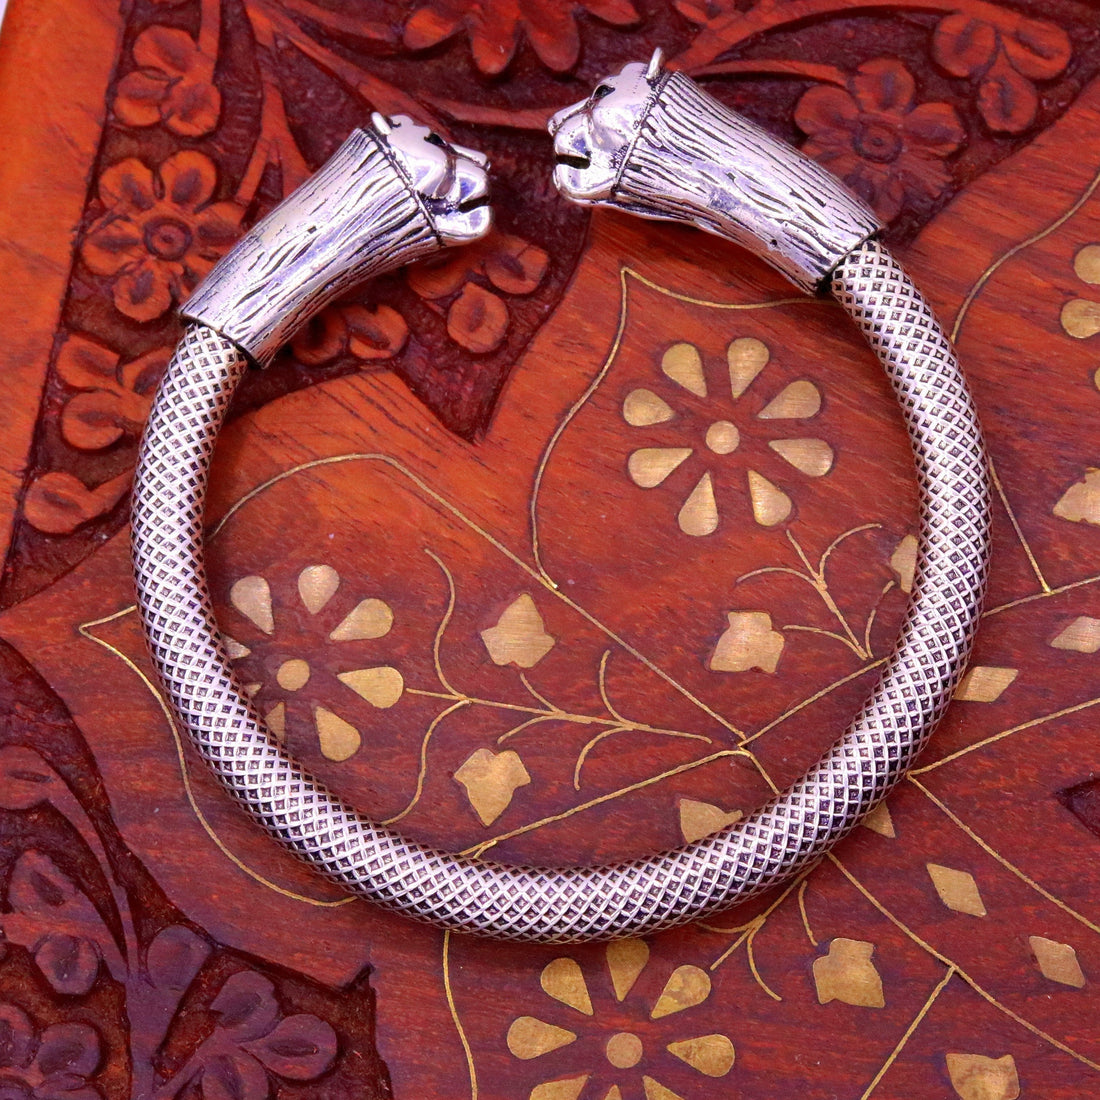 Excellent lion face 925 sterling silver hand crafted work bangle bracelet vintage design adjustable unisex kada bracelet real jewelry nsk189 - TRIBAL ORNAMENTS